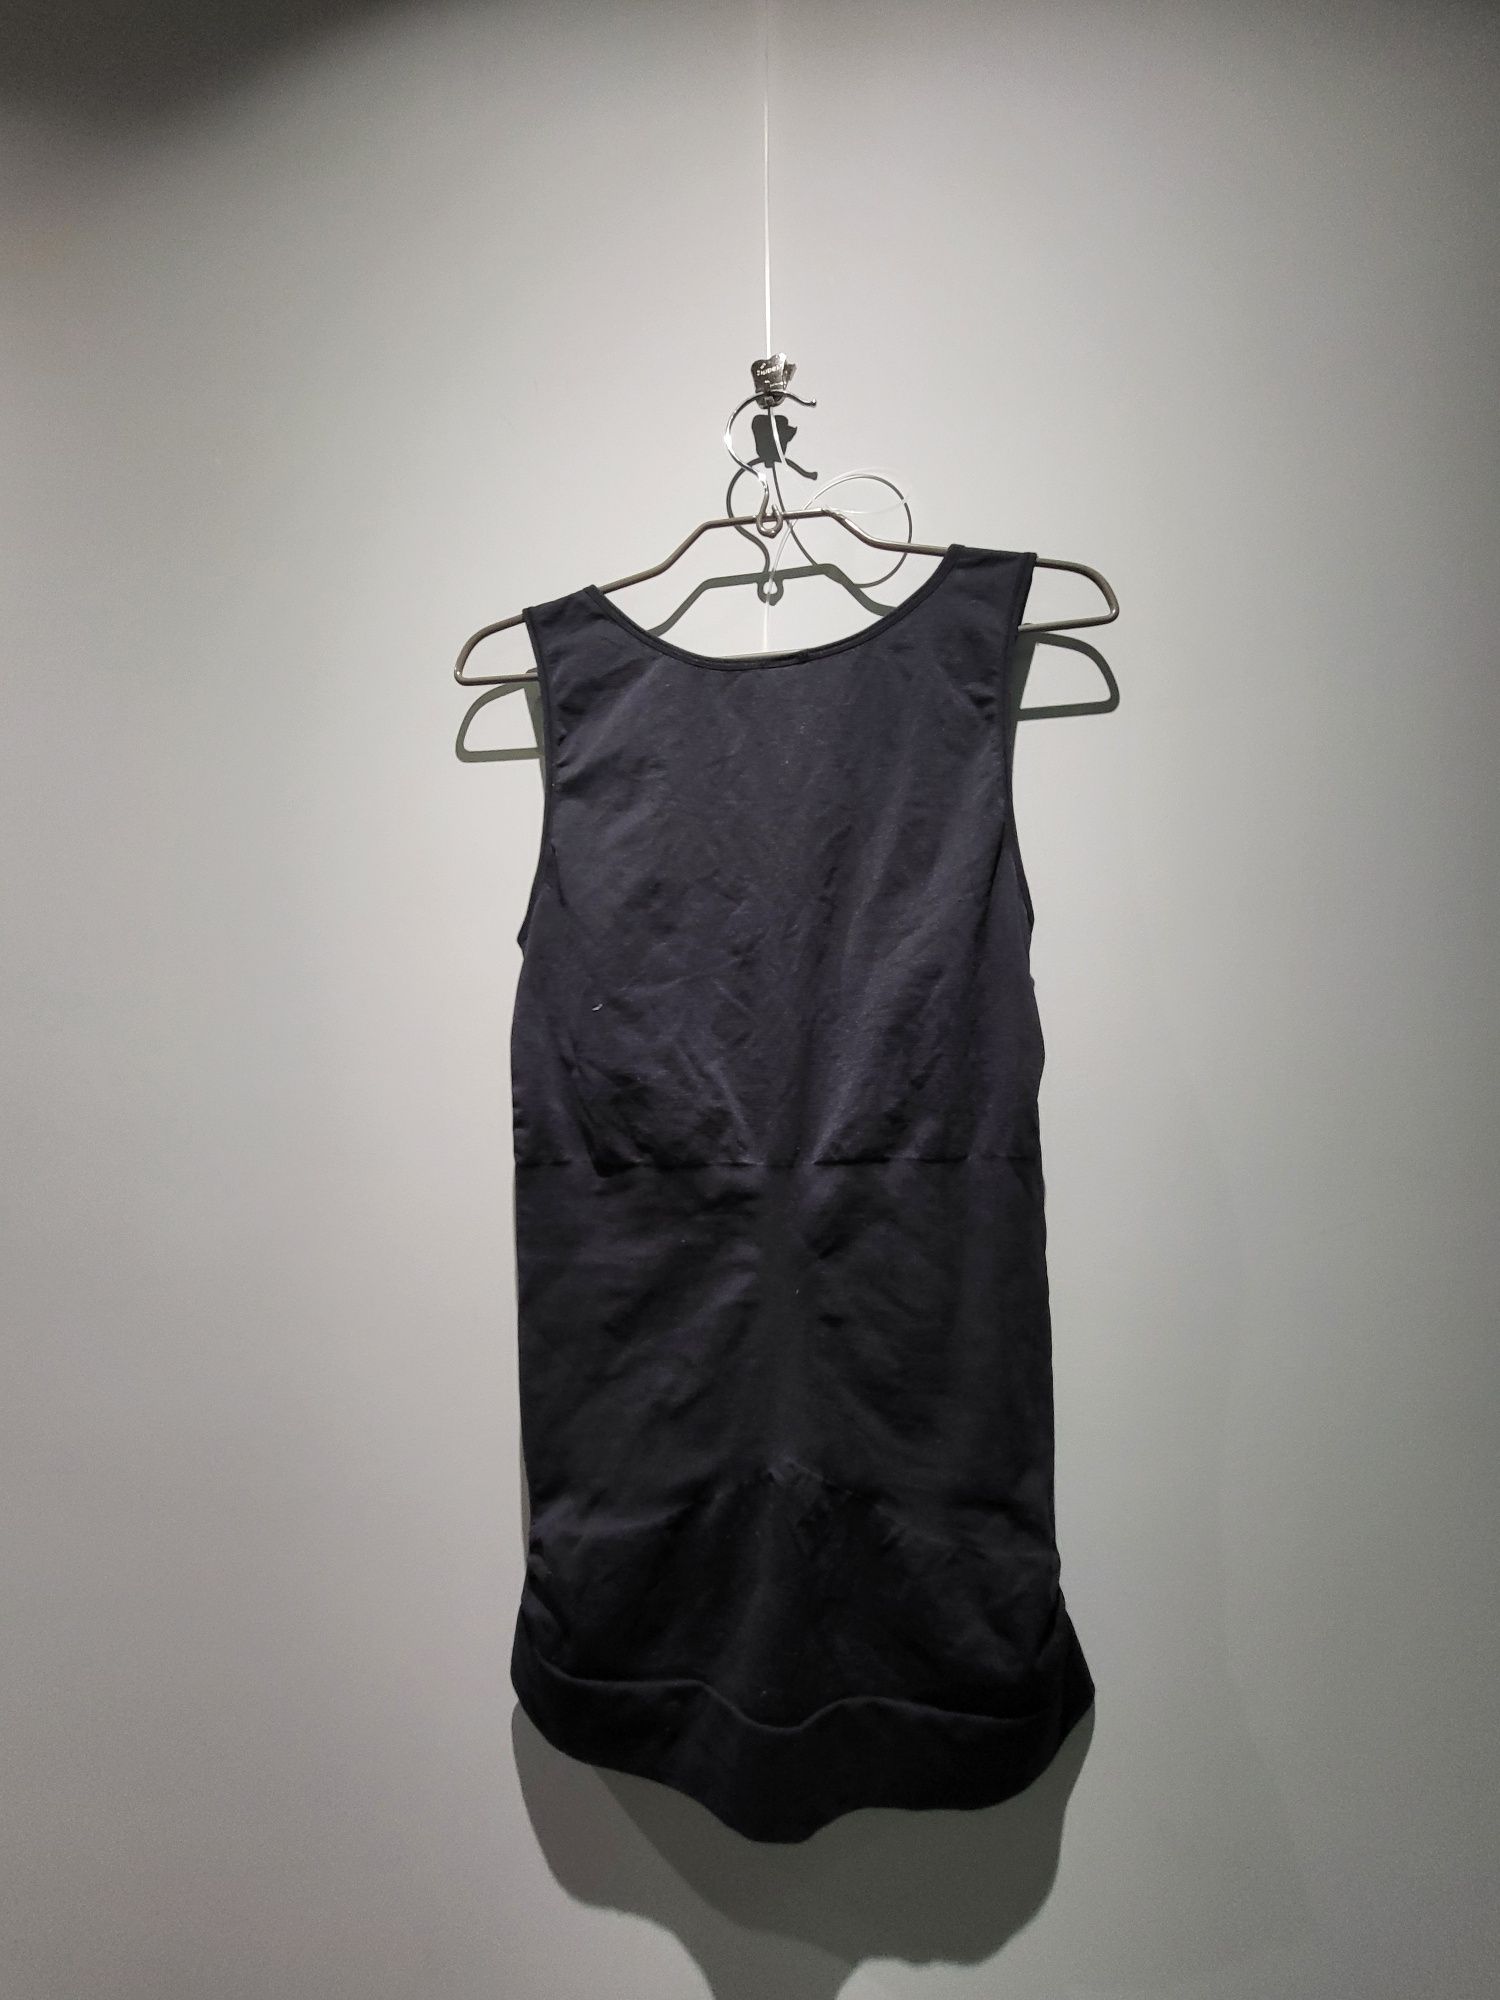 Modelująca bluzka czarna stan bdb
Długość 72cm
Szerokość bez rozciągan